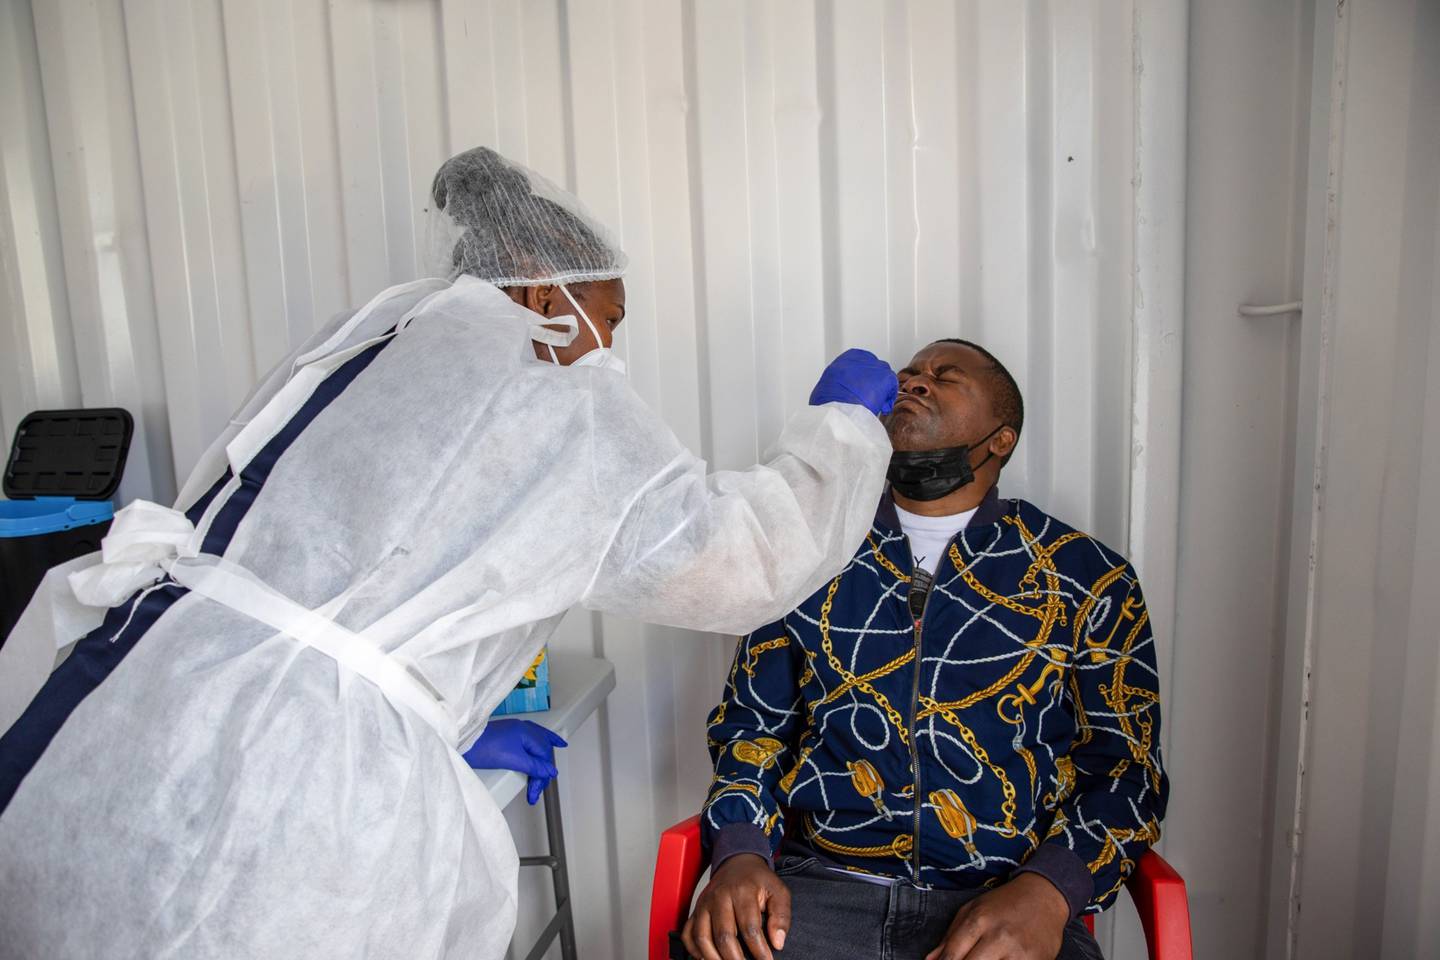 Un trabajador de la salud administra una prueba de hisopo nasal en un sitio de pruebas móviles fuera del centro comercial Richmond Corner en el distrito de Milnerton, Sudáfrica, el jueves 2 de diciembre de 2021. Fotógrafo: Dwayne Senior/Bloomberg